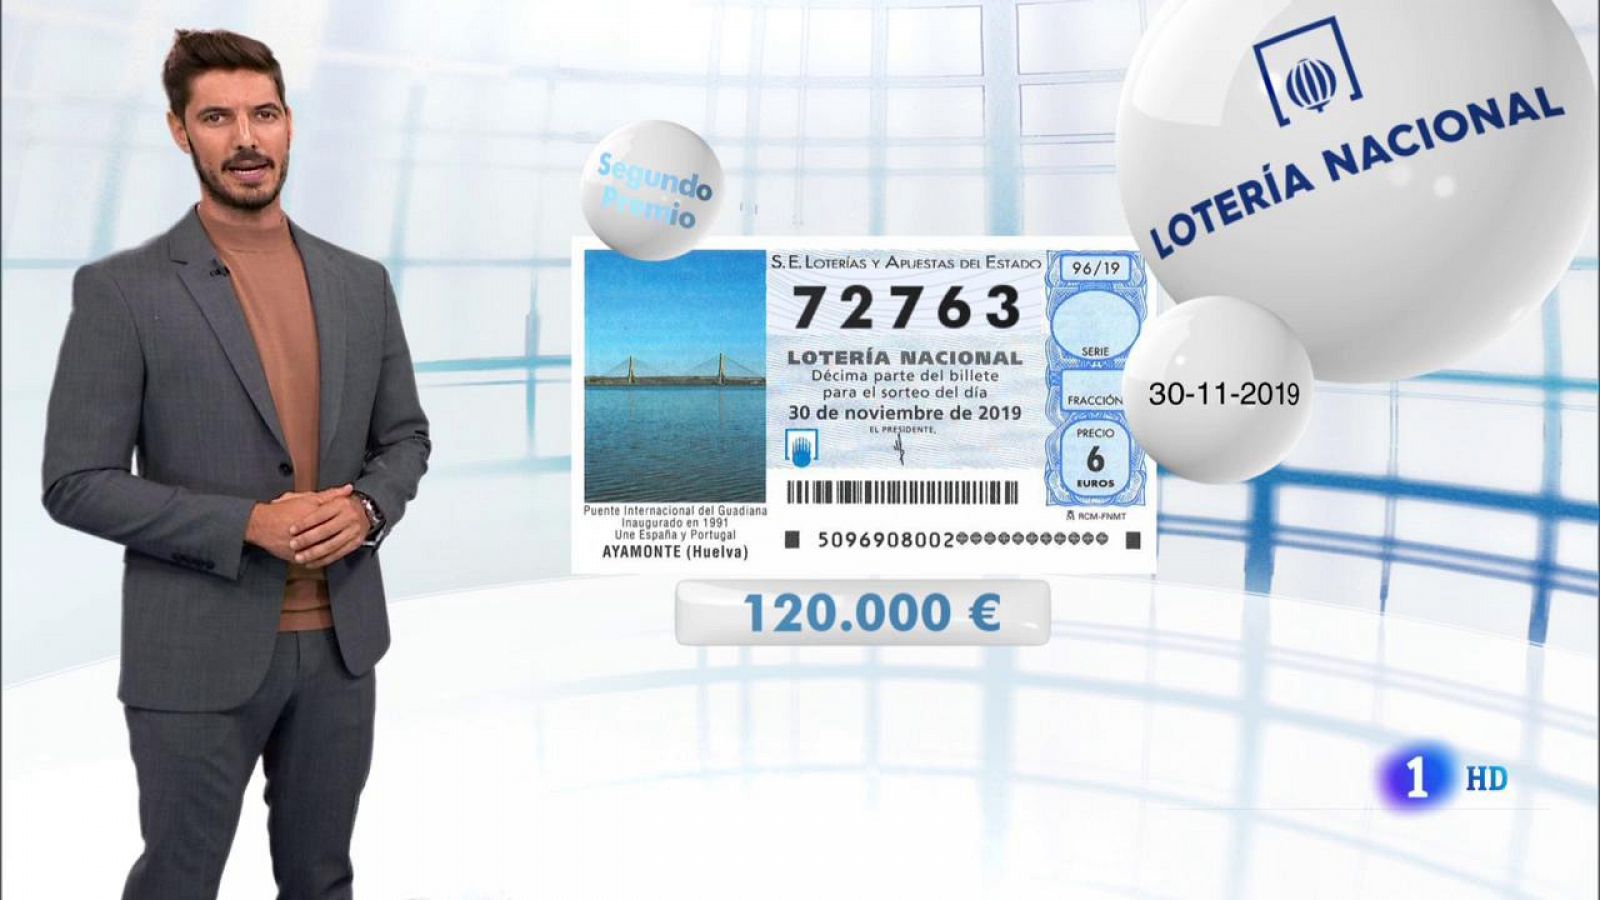 Lotería Nacional - 30/11/19 - RTVE.es